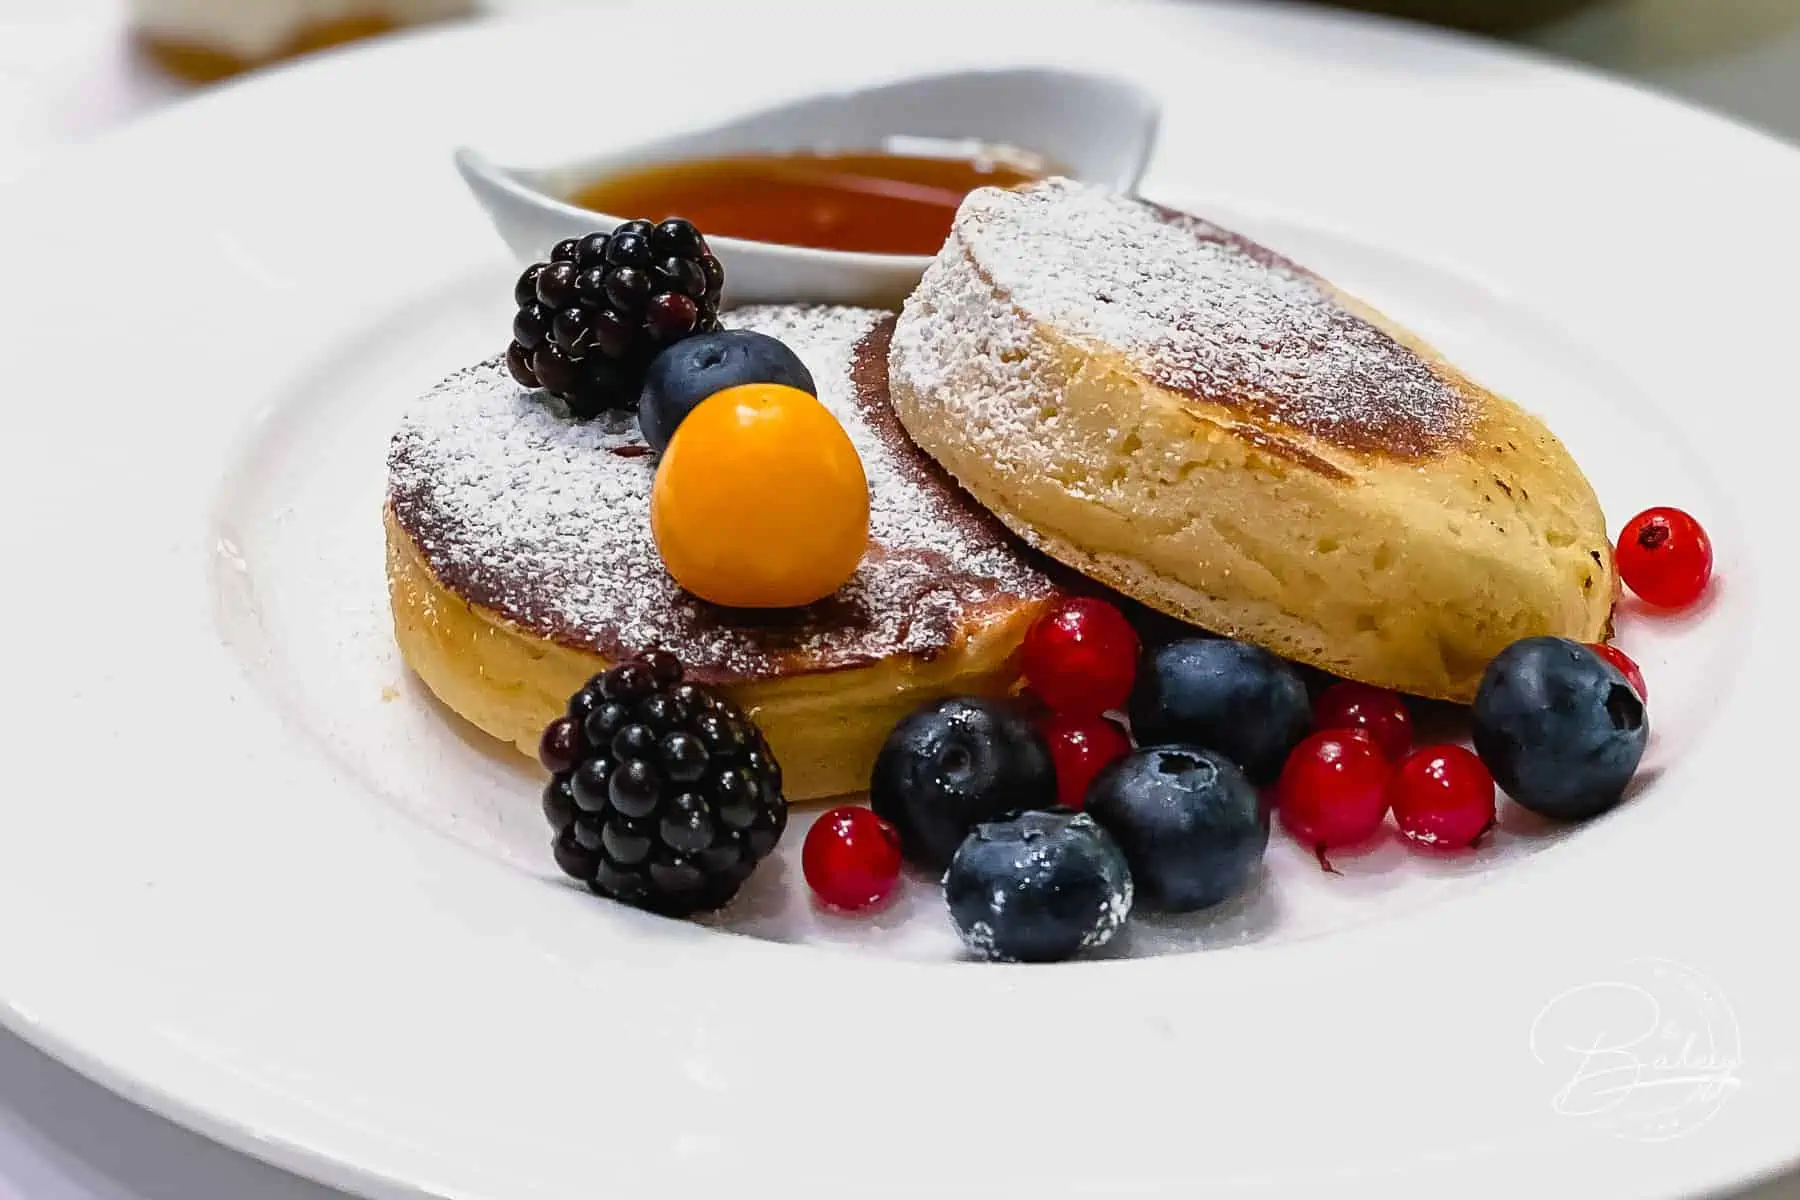 Dicke Pancakes selber machen fluffige amerikanische Pancakes - Amerikanische Pancakes selber machen - fluffig lockere Pancakes - Pancakes Rezept - leckere weiche dicke Pfannkuchen